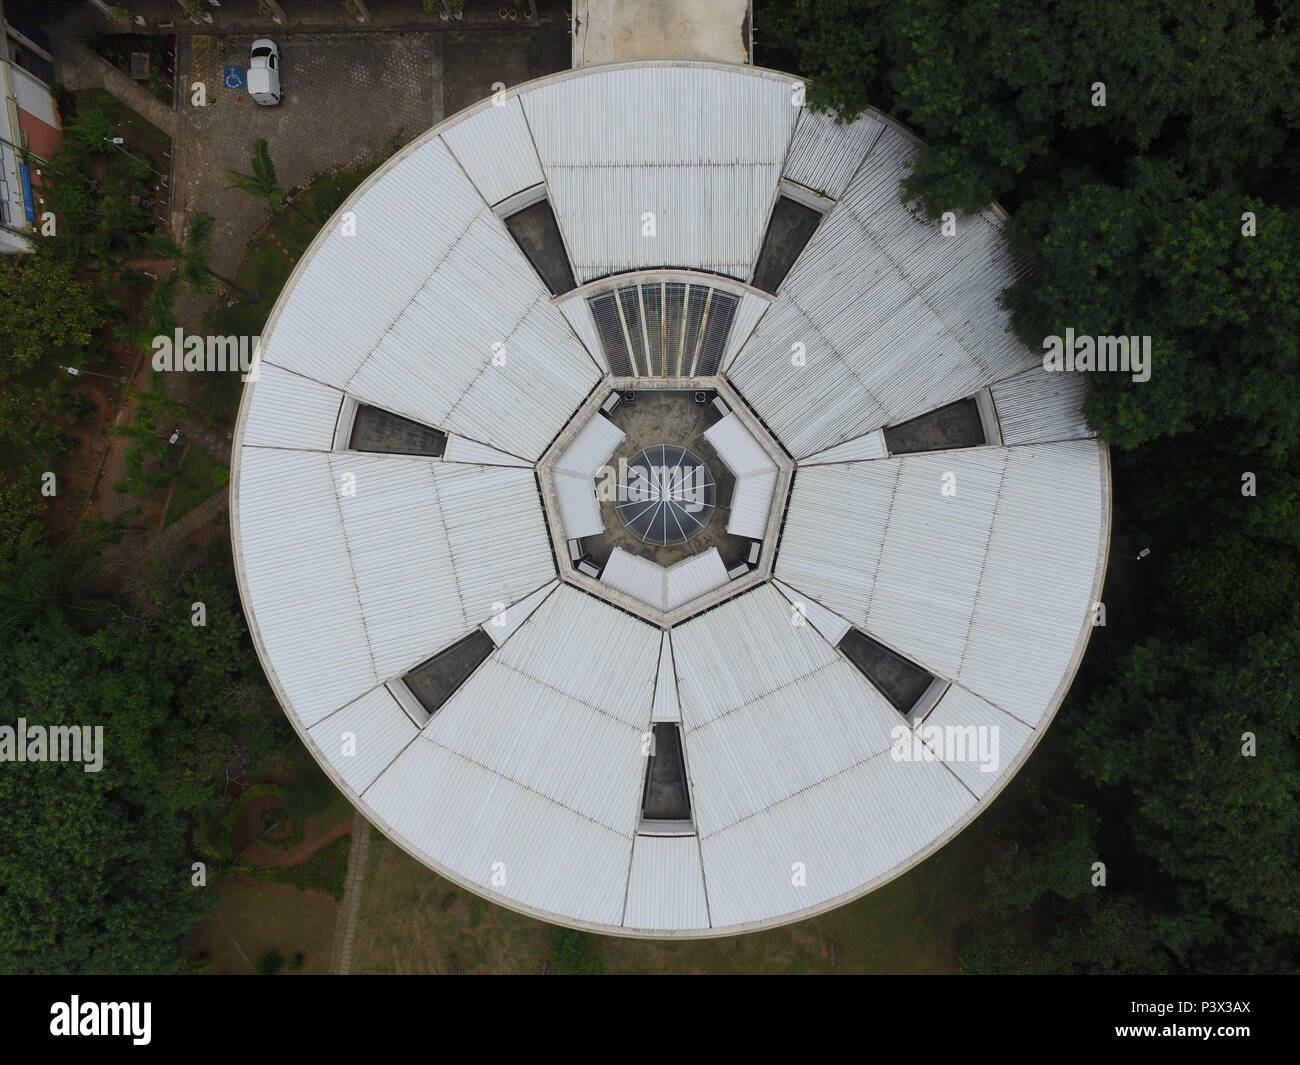 Imagem aérea do prédio da Poli, na USP, a 30 metros de altura Stock Photo -  Alamy